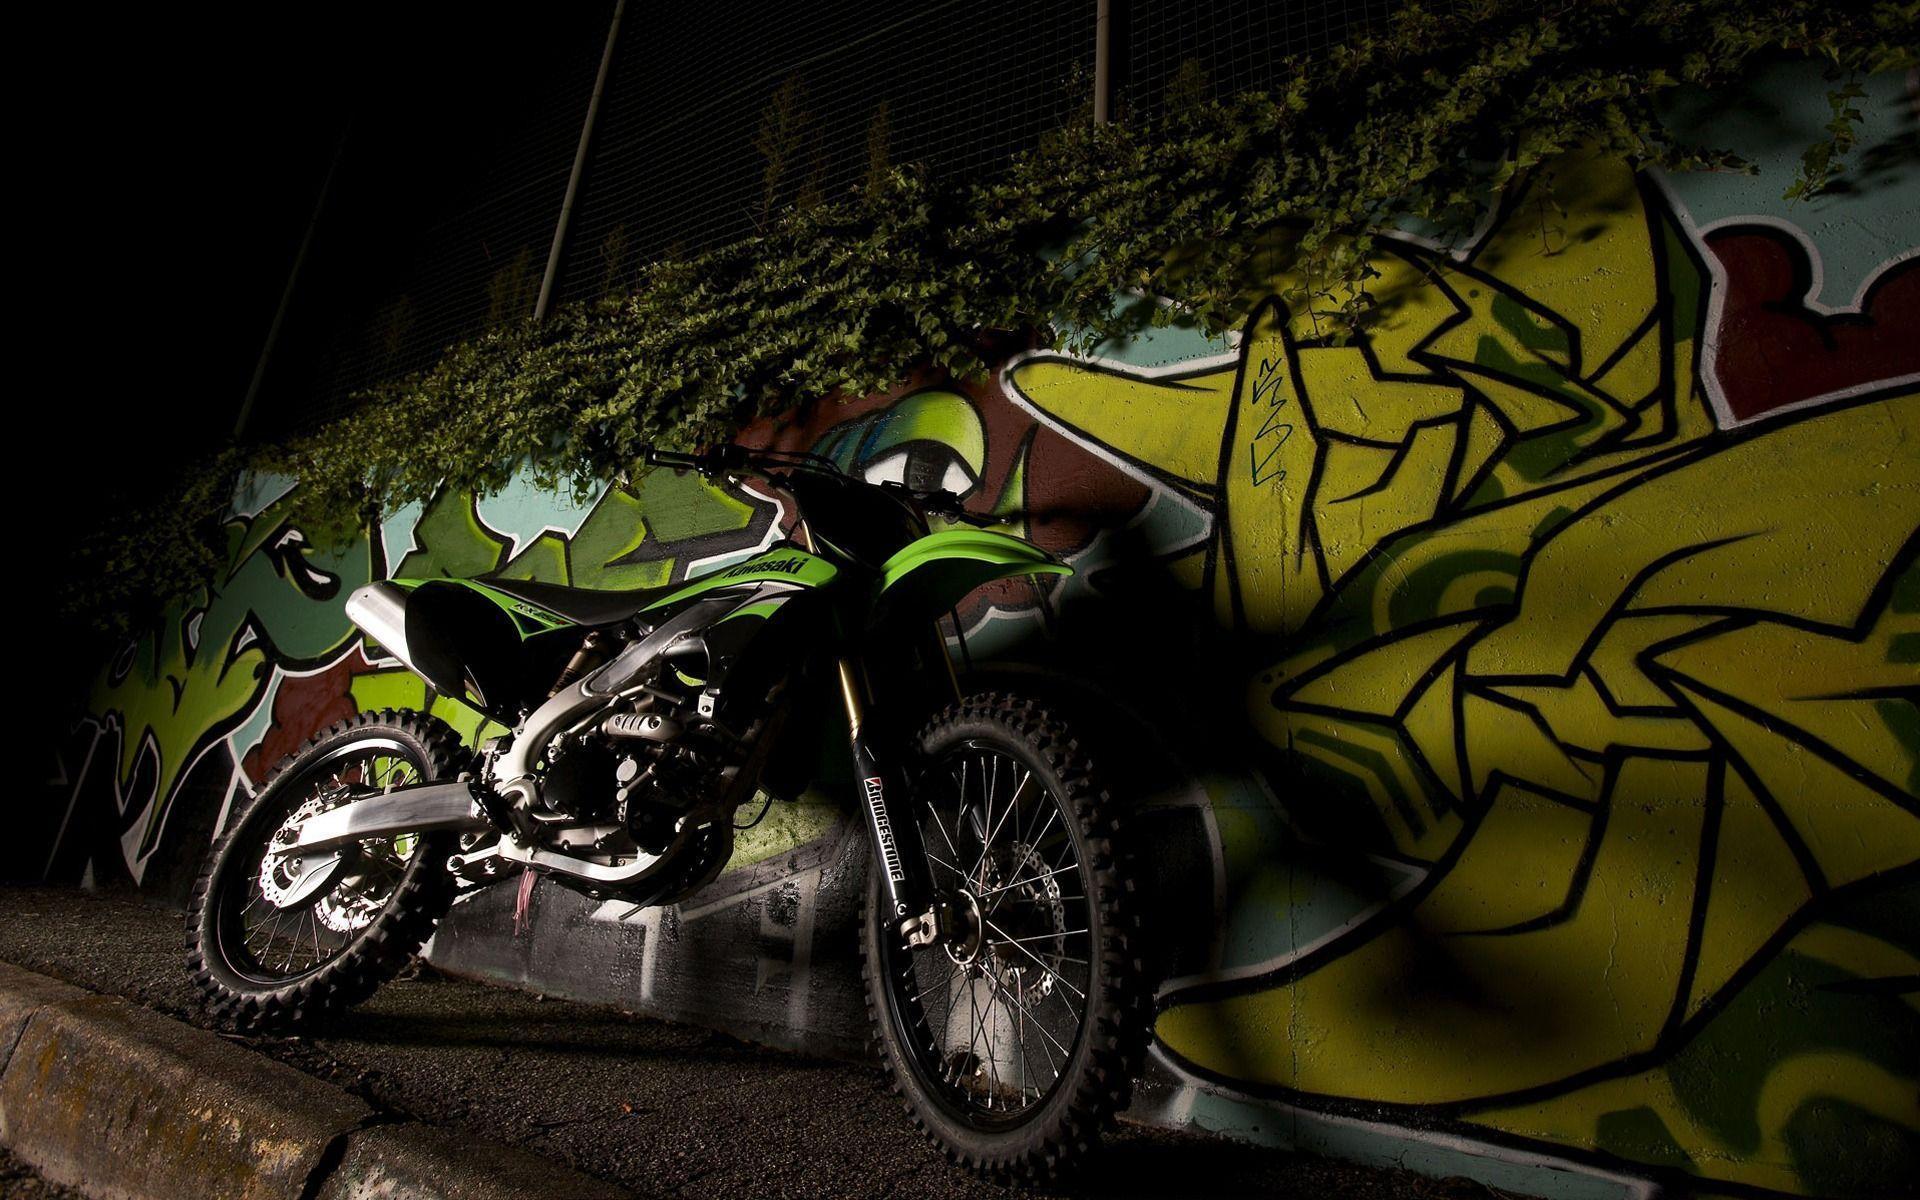 Kawasaki Motorcycle Wallpaper. Download Kawasaki Motorcycle HD